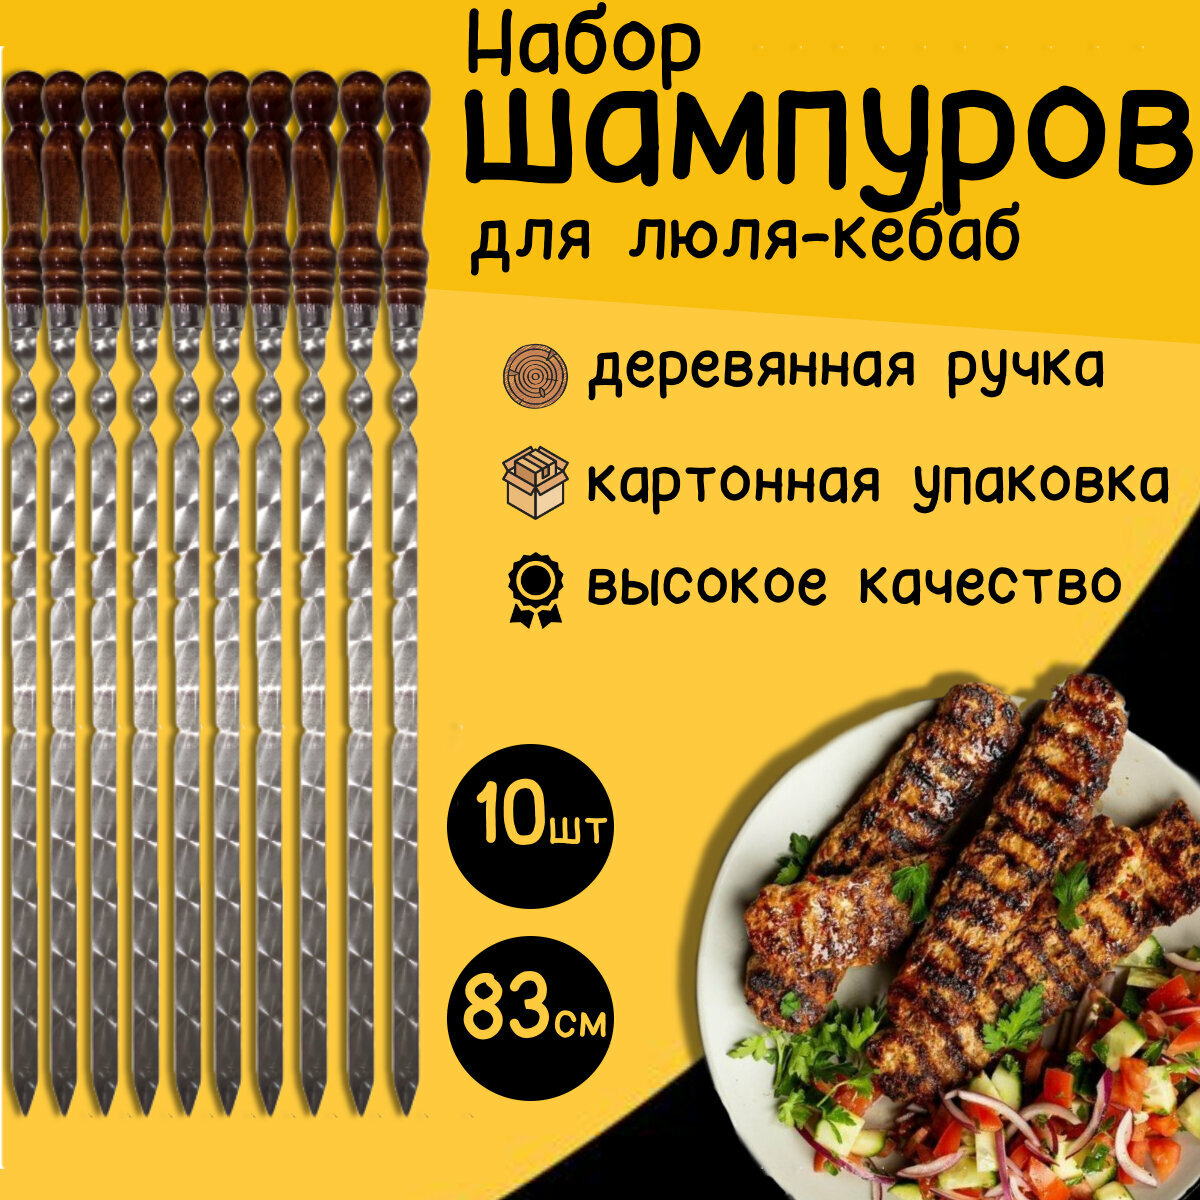 Шампуры для люля-кебаб 83 см 10 штук